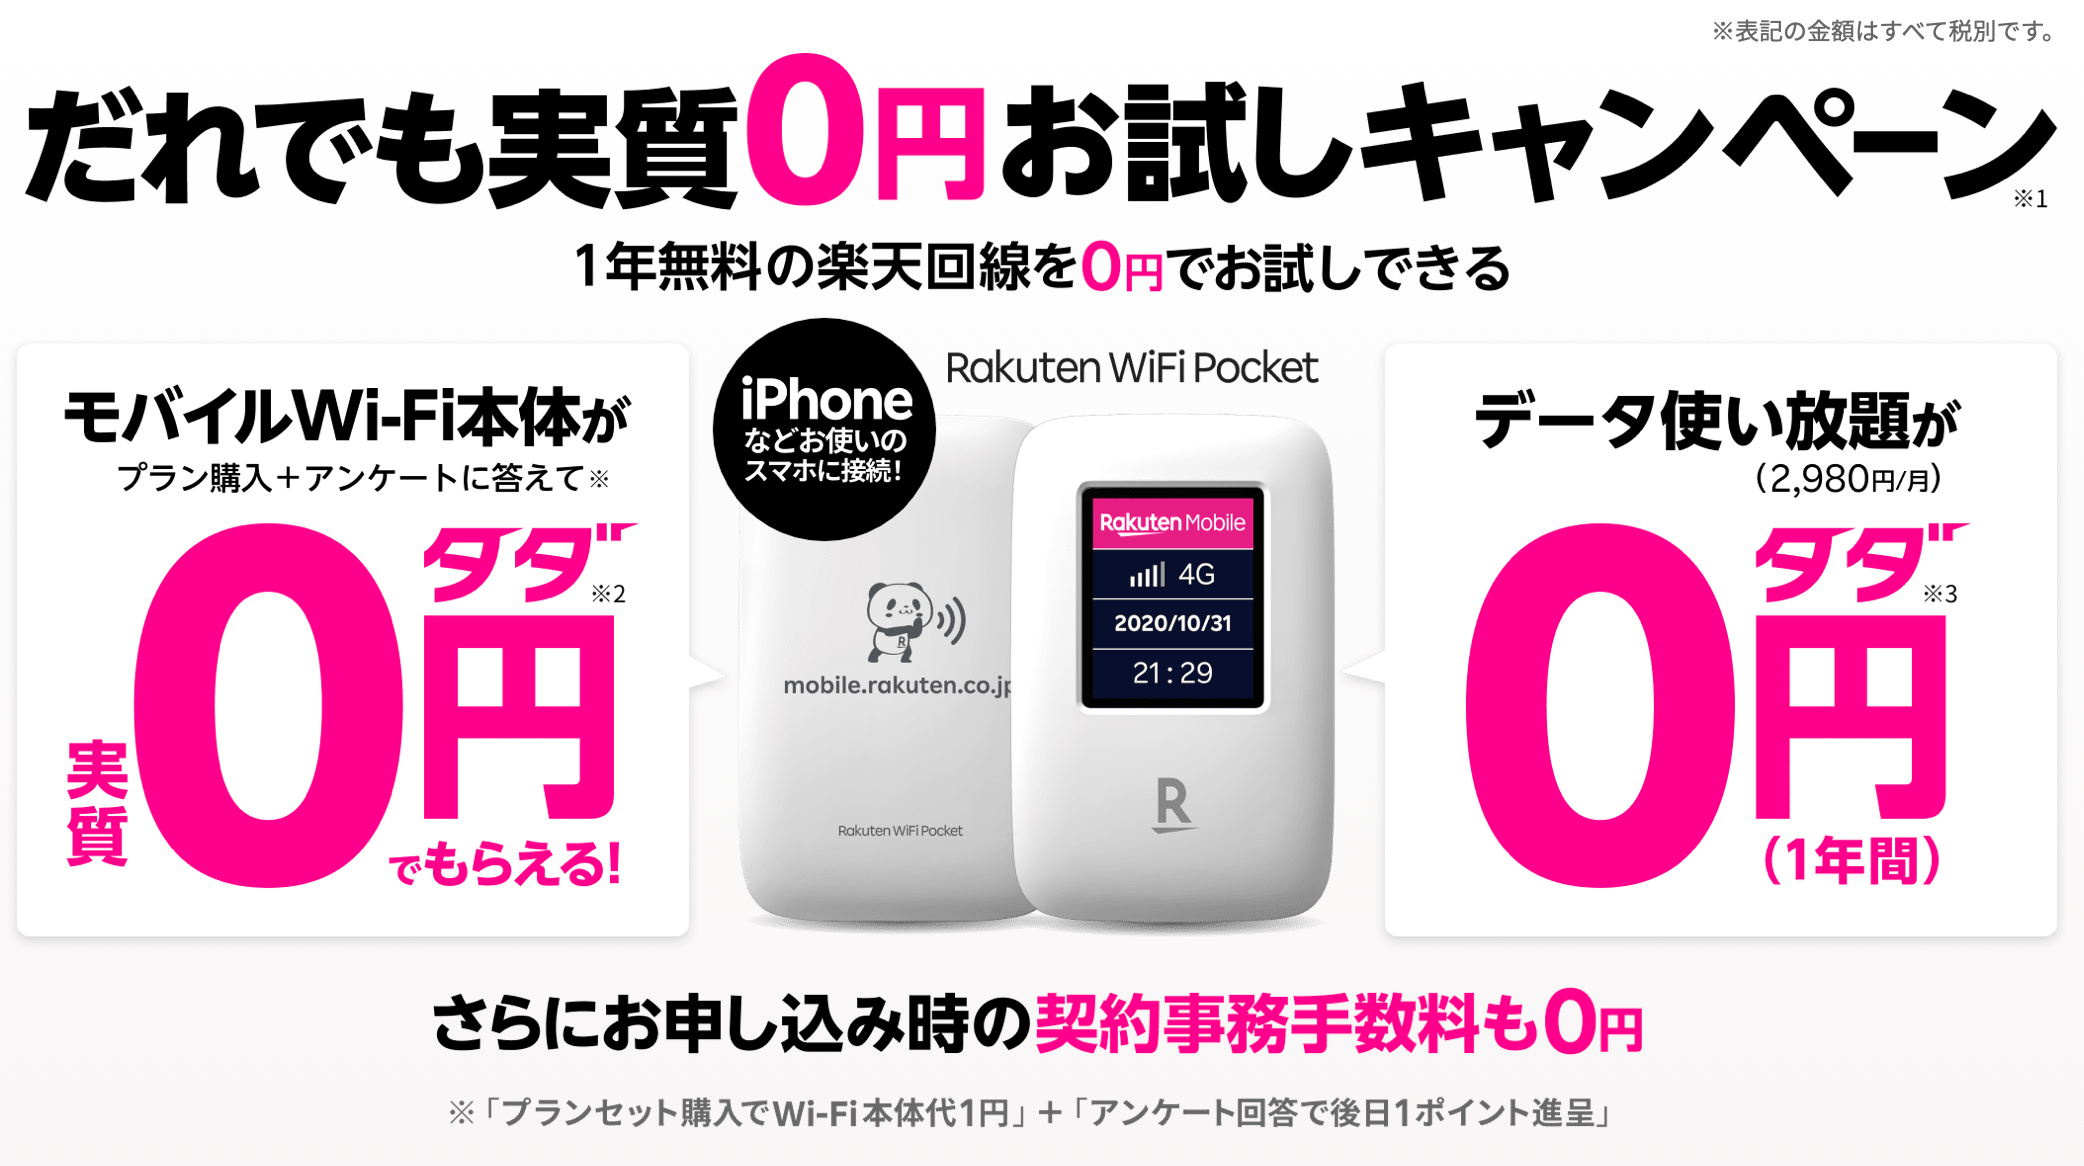 Rakuten WiFi Pocketだれでも0円お試しキャンペーン実施中